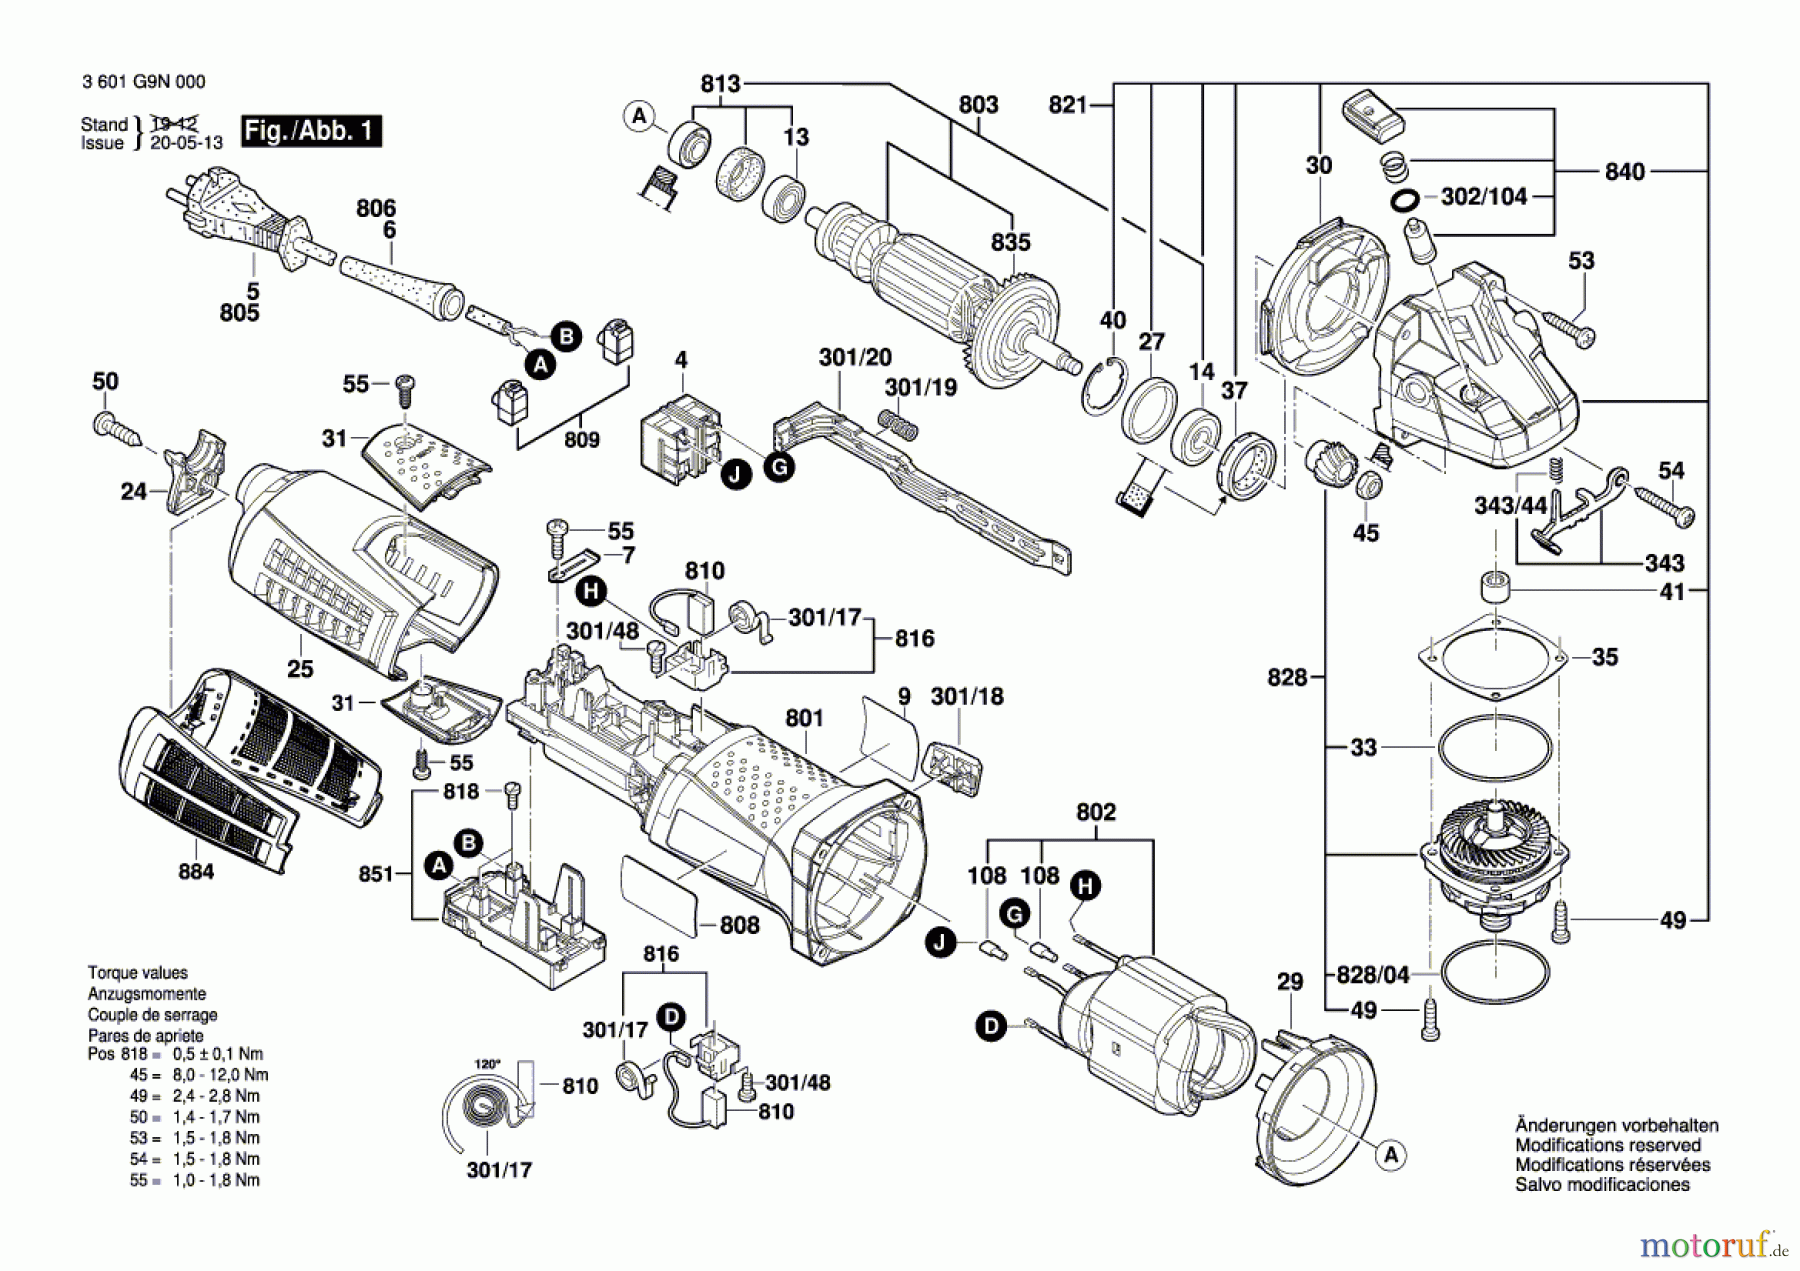  Bosch Werkzeug Winkelschleifer GWS 19-125 CI Seite 1